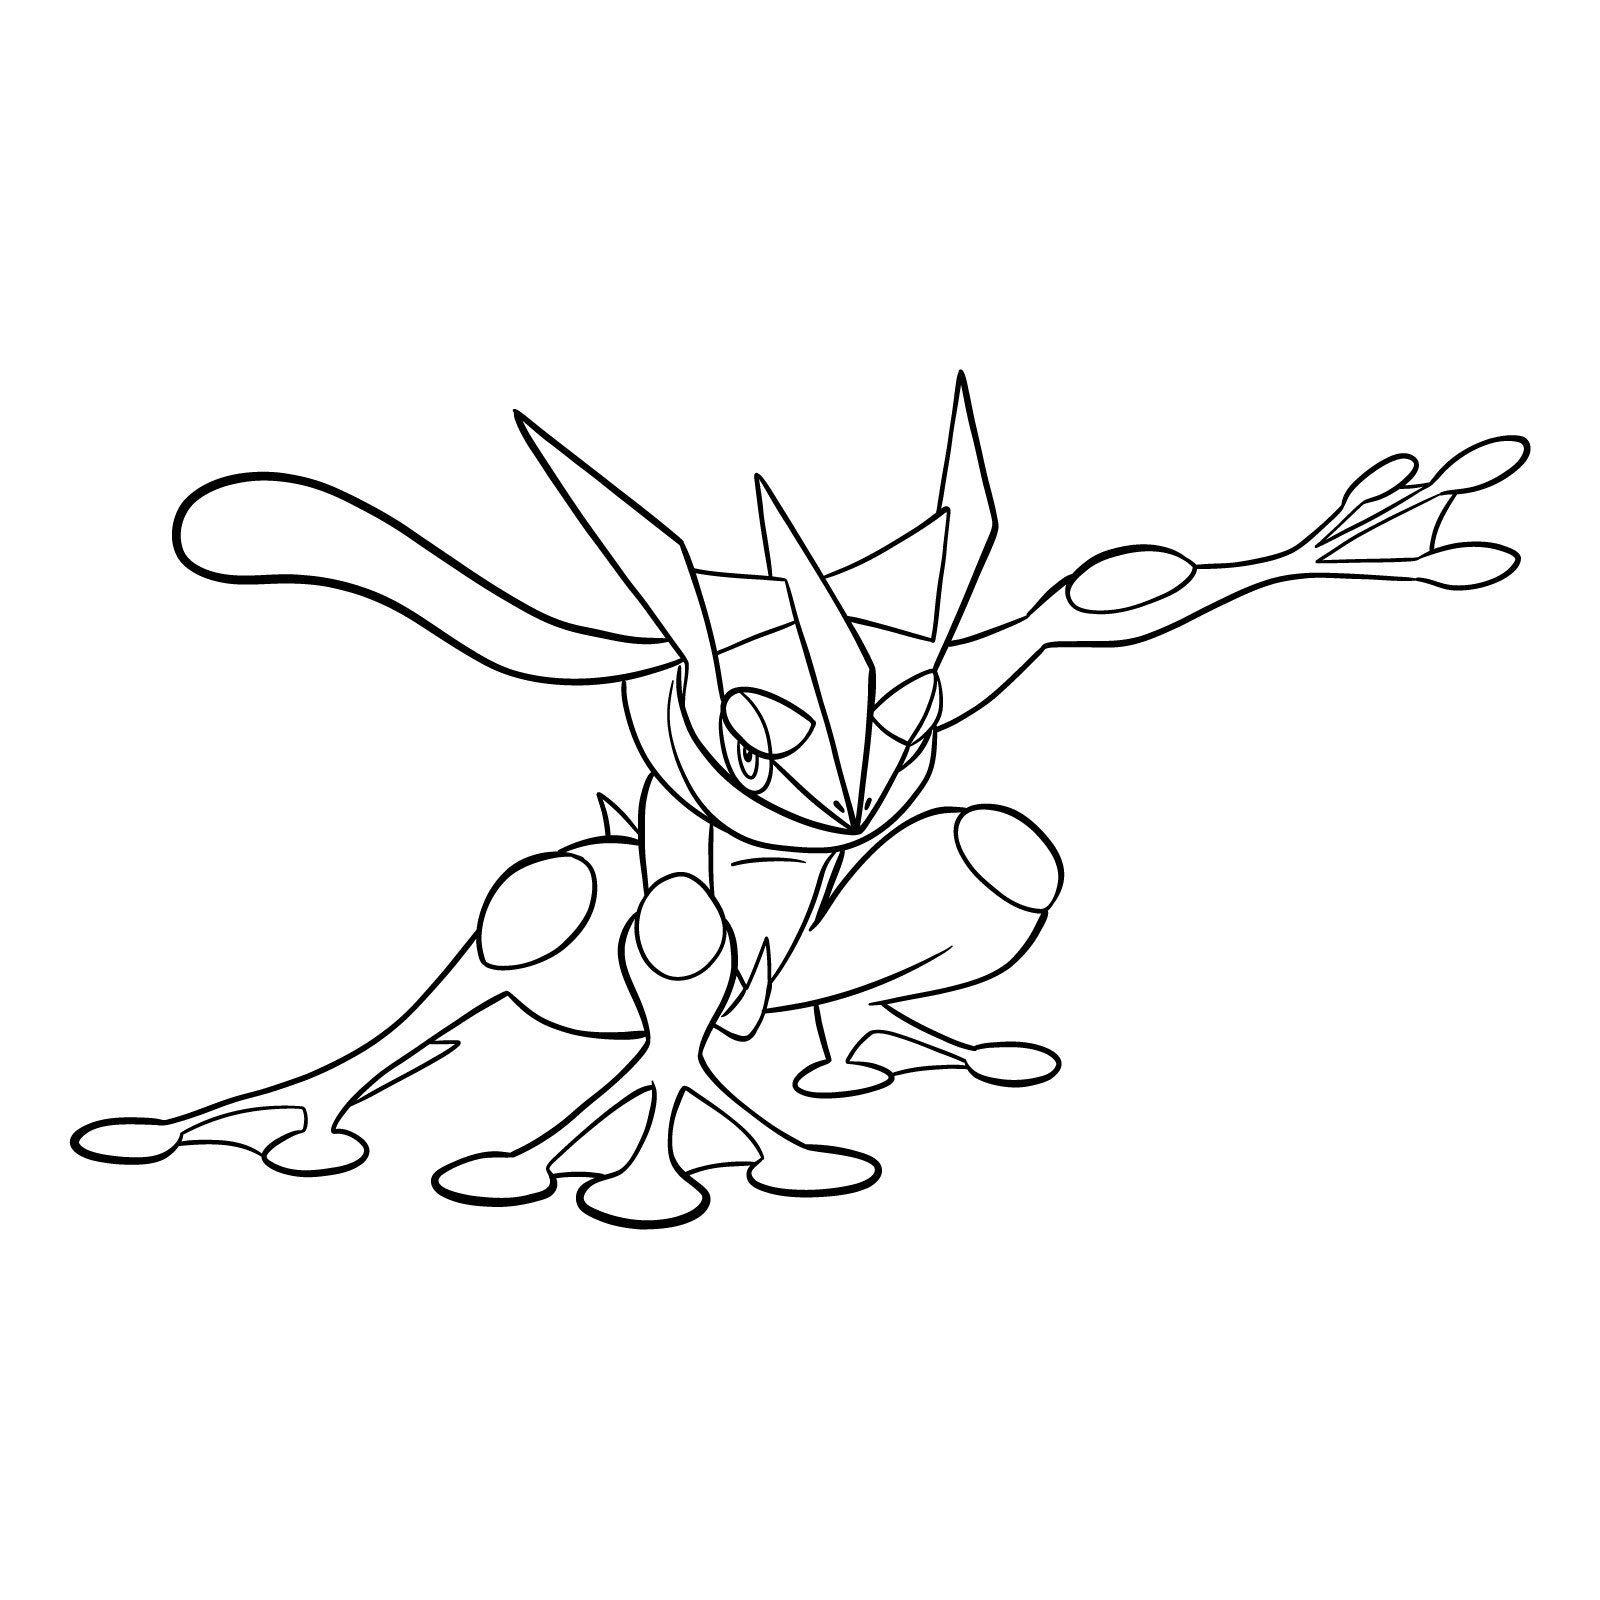 How to draw Greninja Pokemon - final step